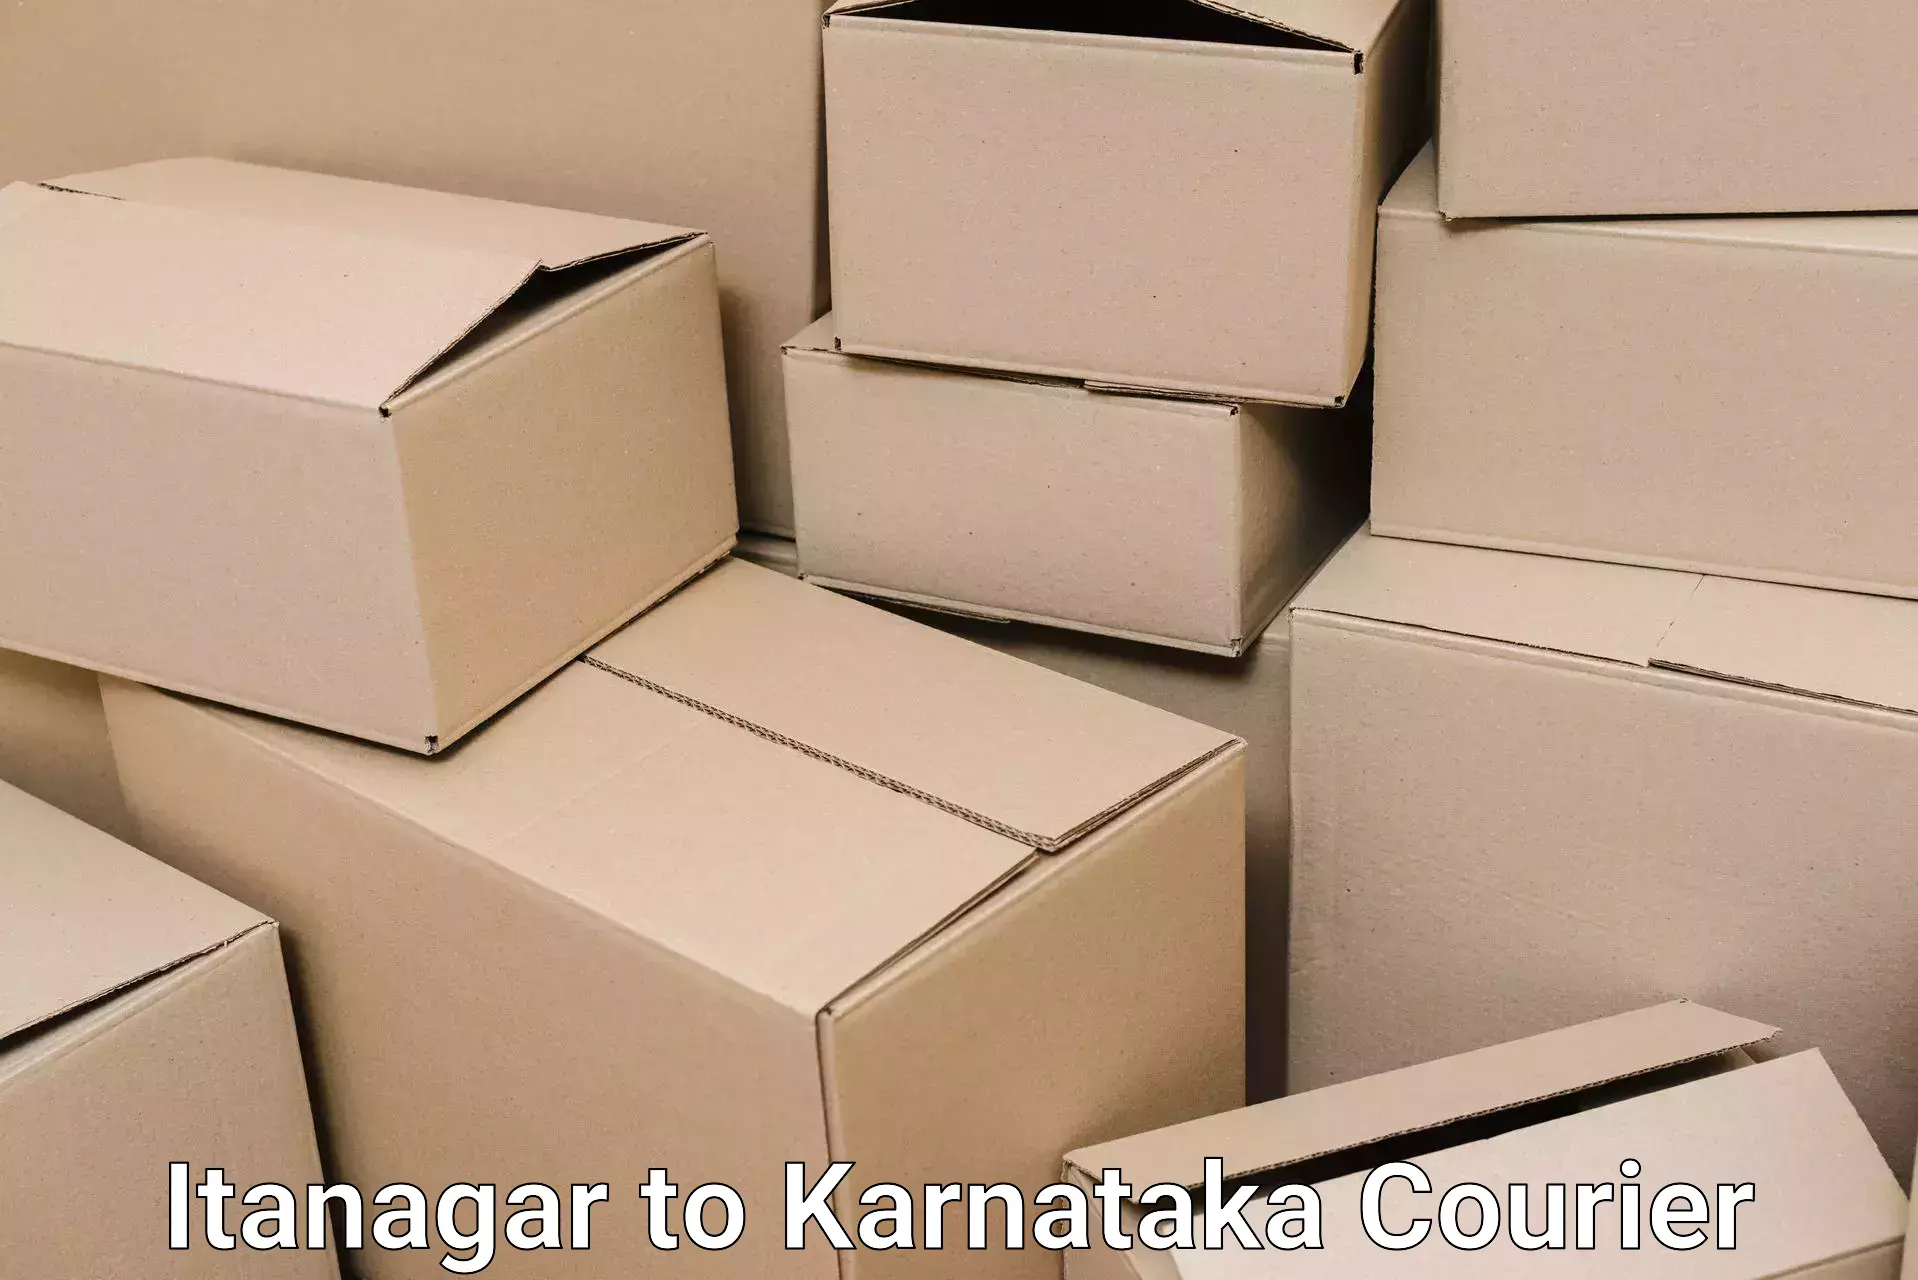 Furniture transport services Itanagar to Kanjarakatte